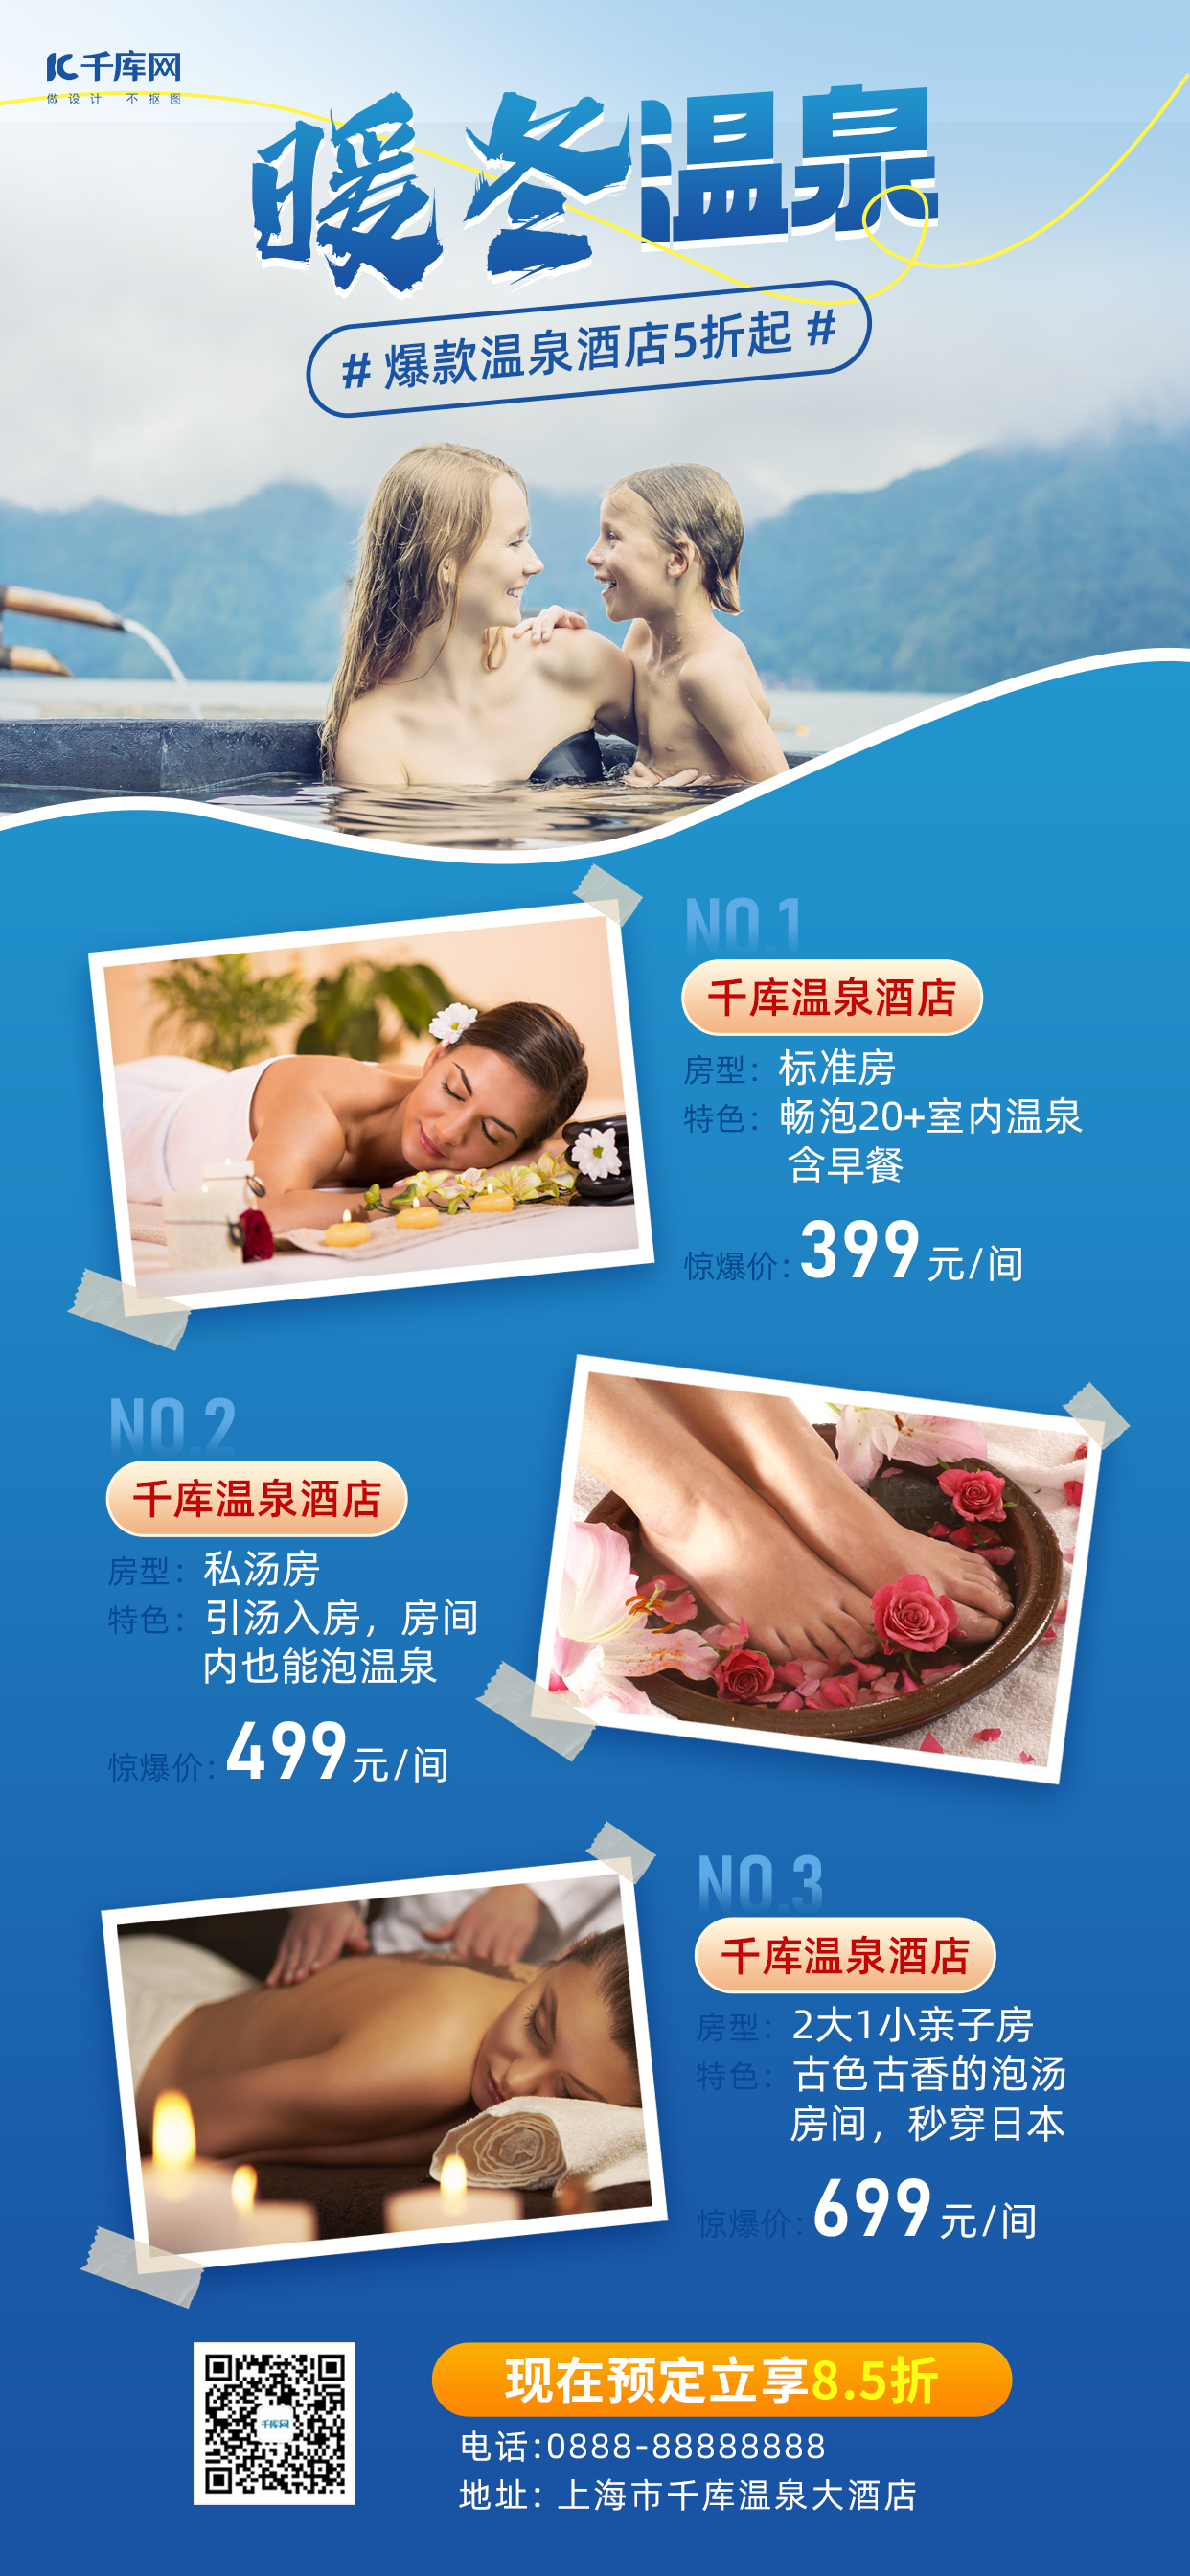 暖冬温泉温泉酒店蓝色简约旅游宣传海报图片